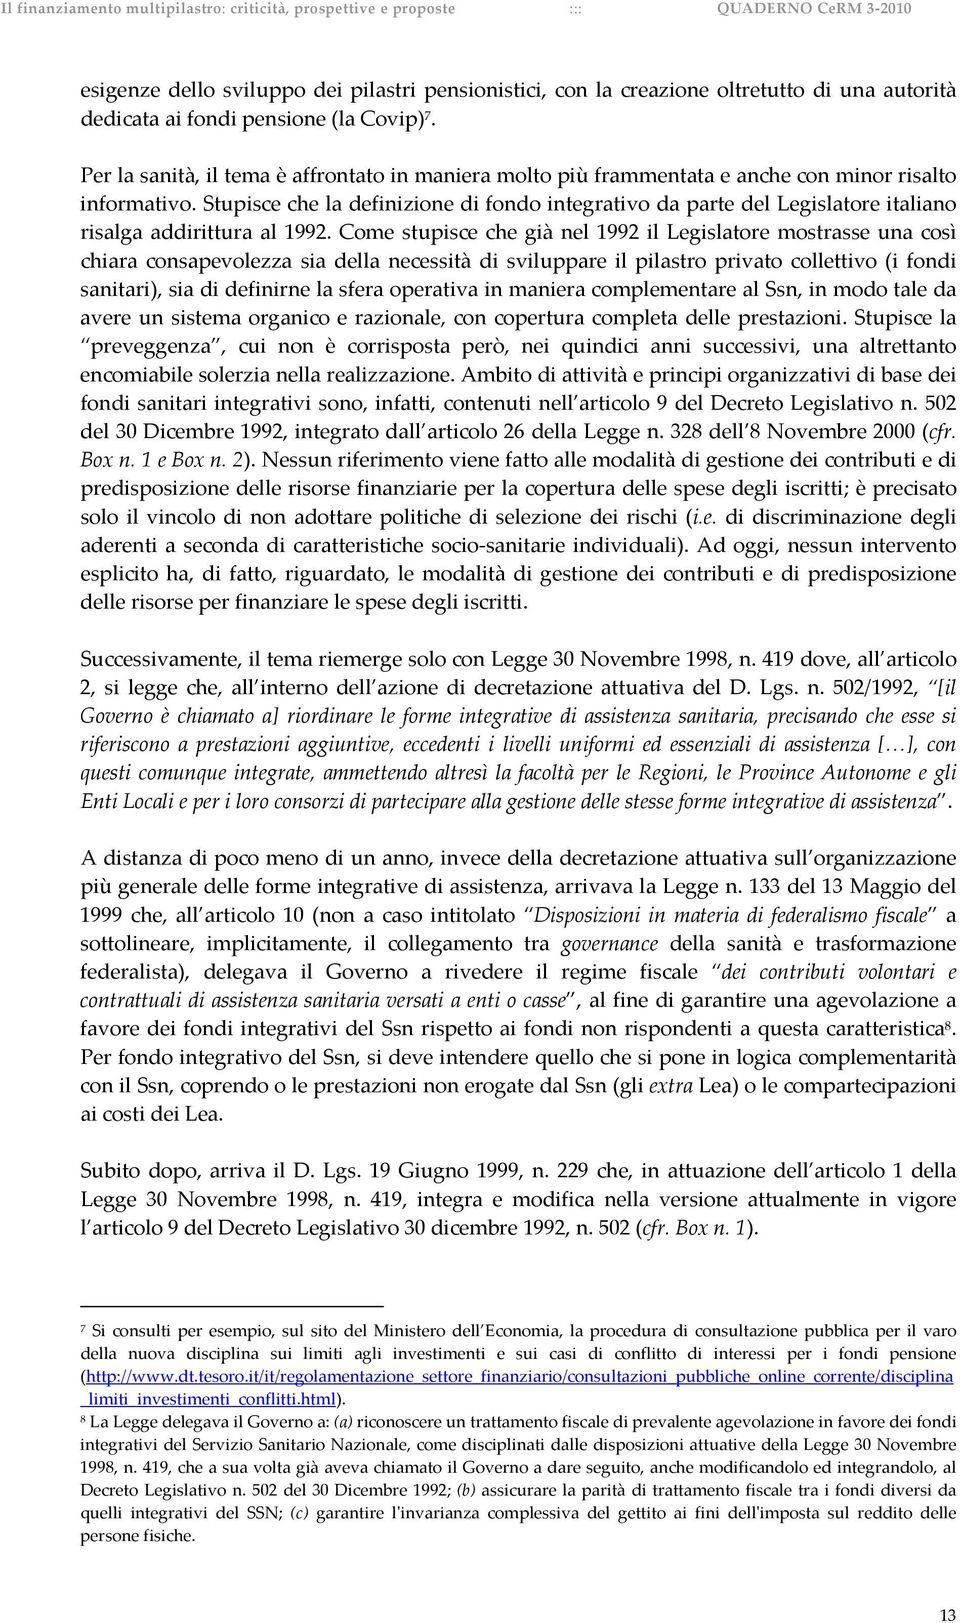 Stupisce che la definizione di fondo integrativo da parte del Legislatore italiano risalga addirittura al 1992.